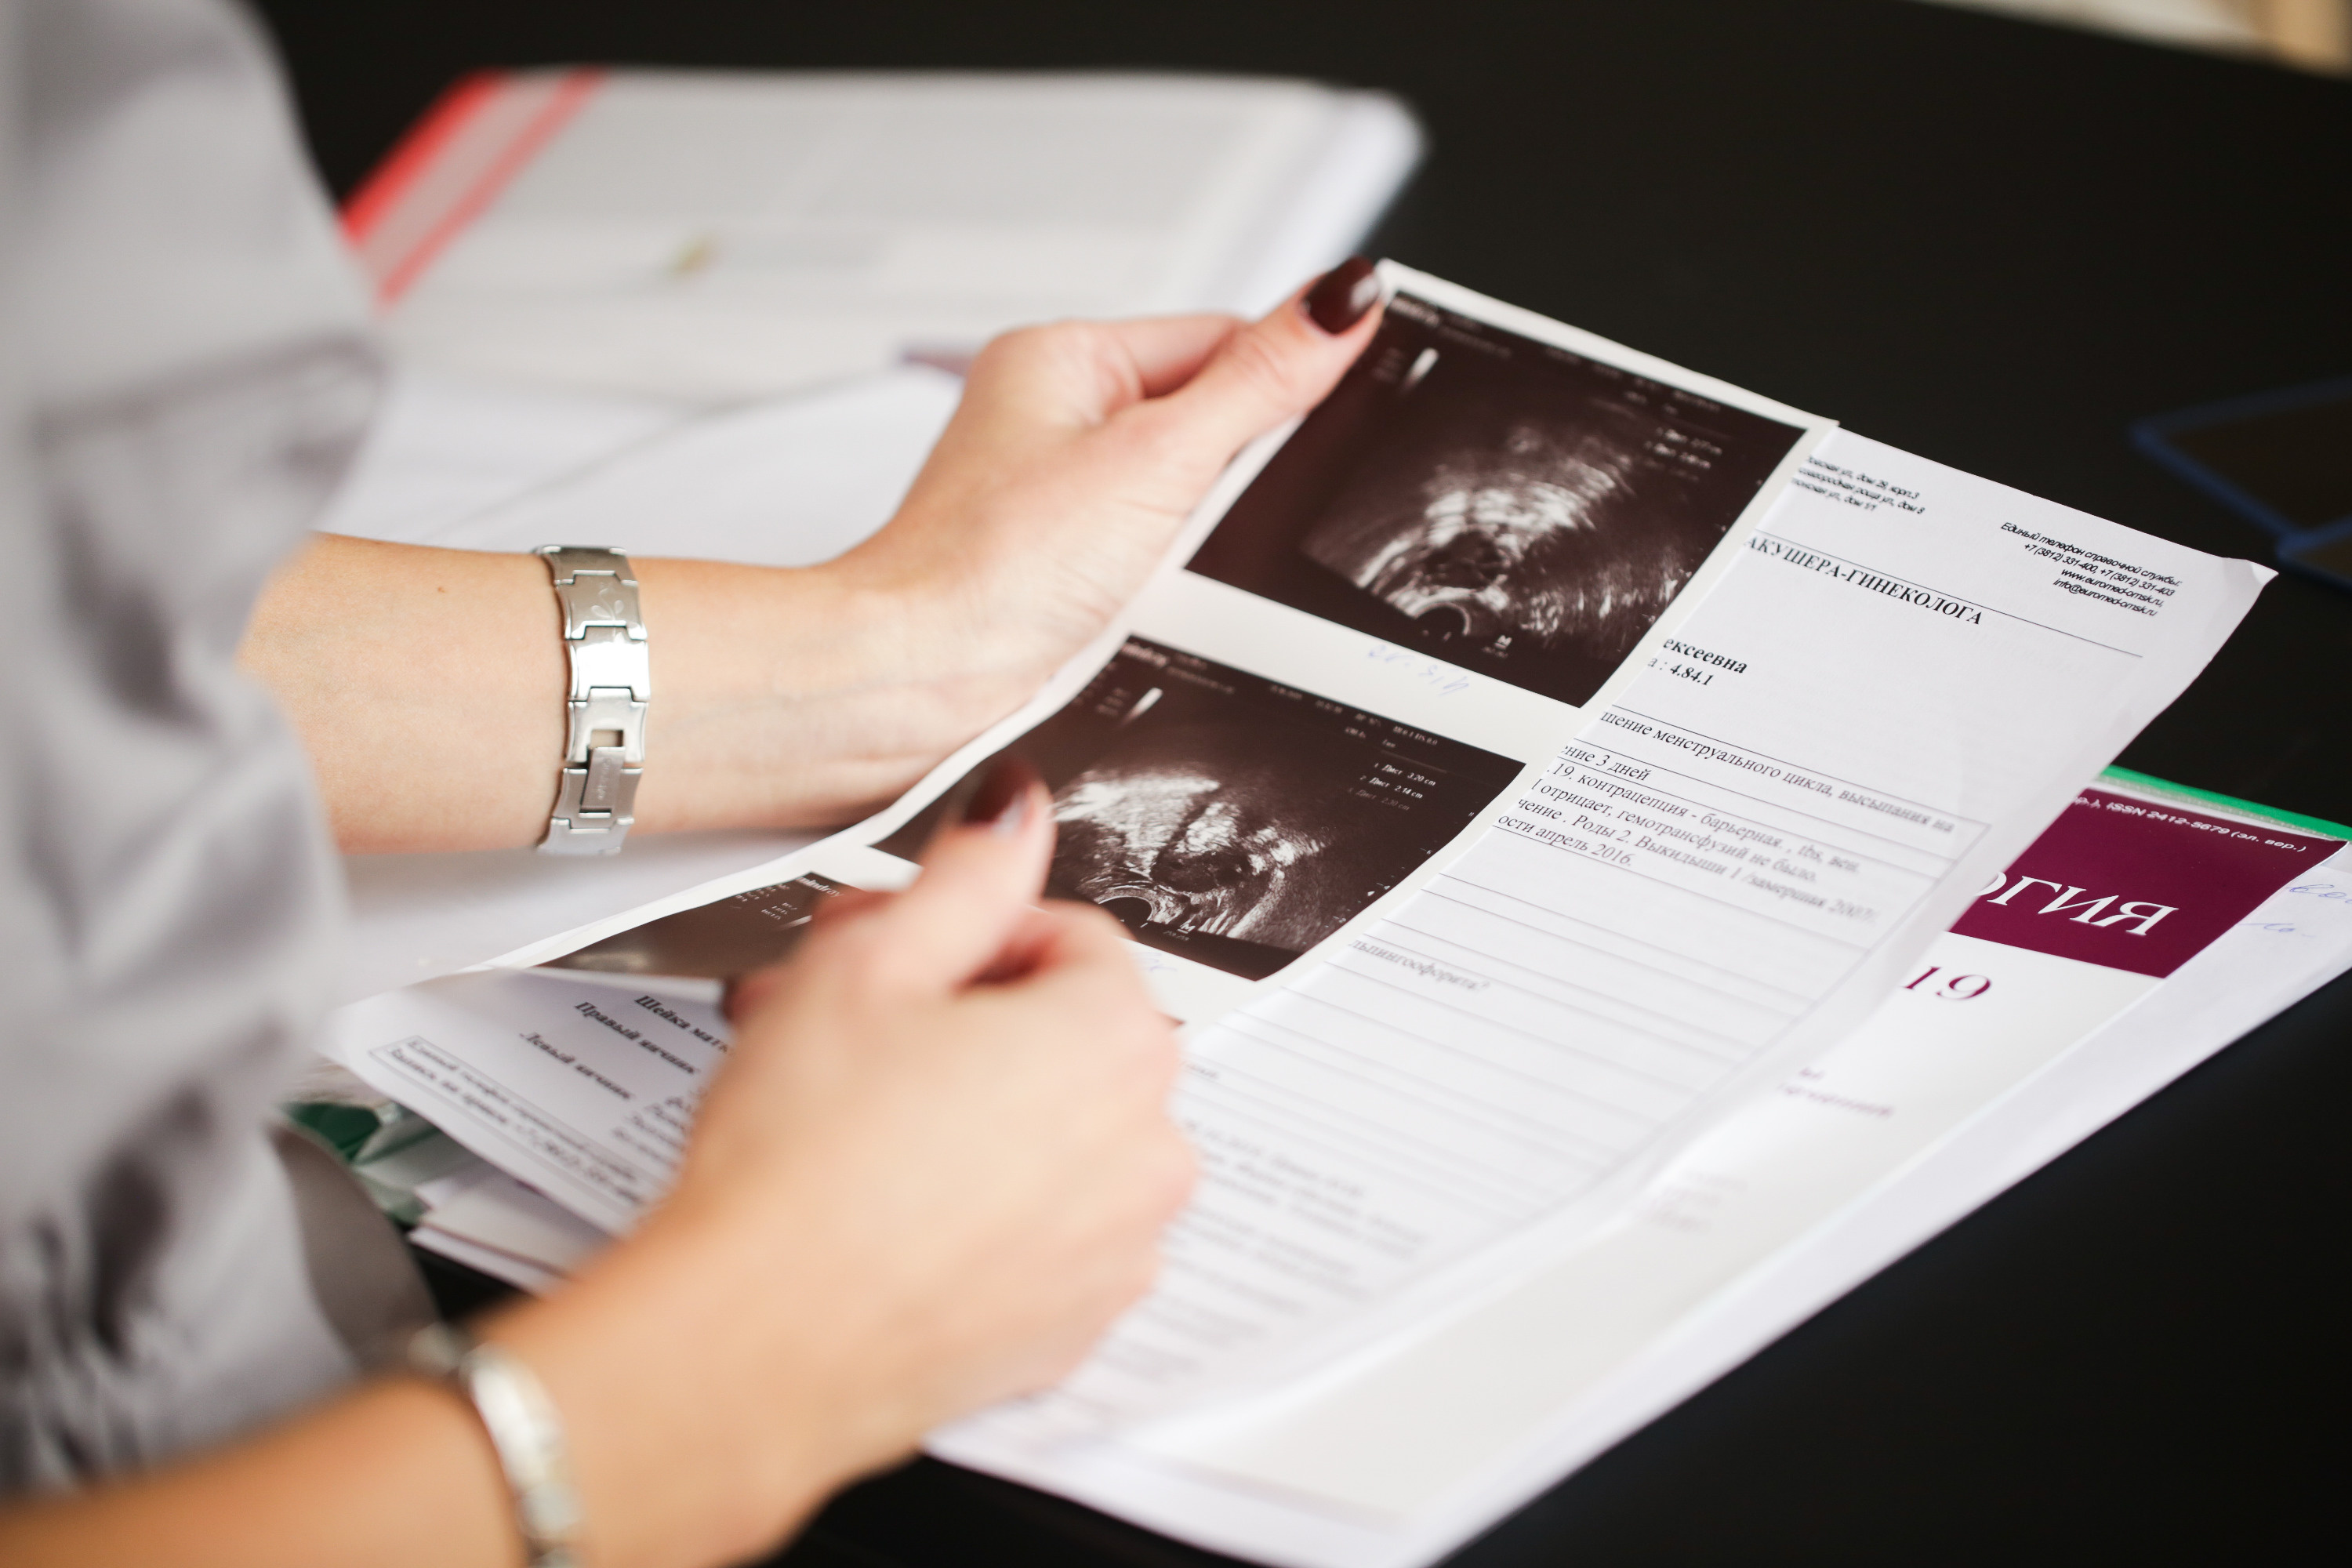 В аккаунтах «Евромеда» есть постоянная рубрика «Хочу ребенка», где врачи-репродуктологи отвечают на вопросы пациентов